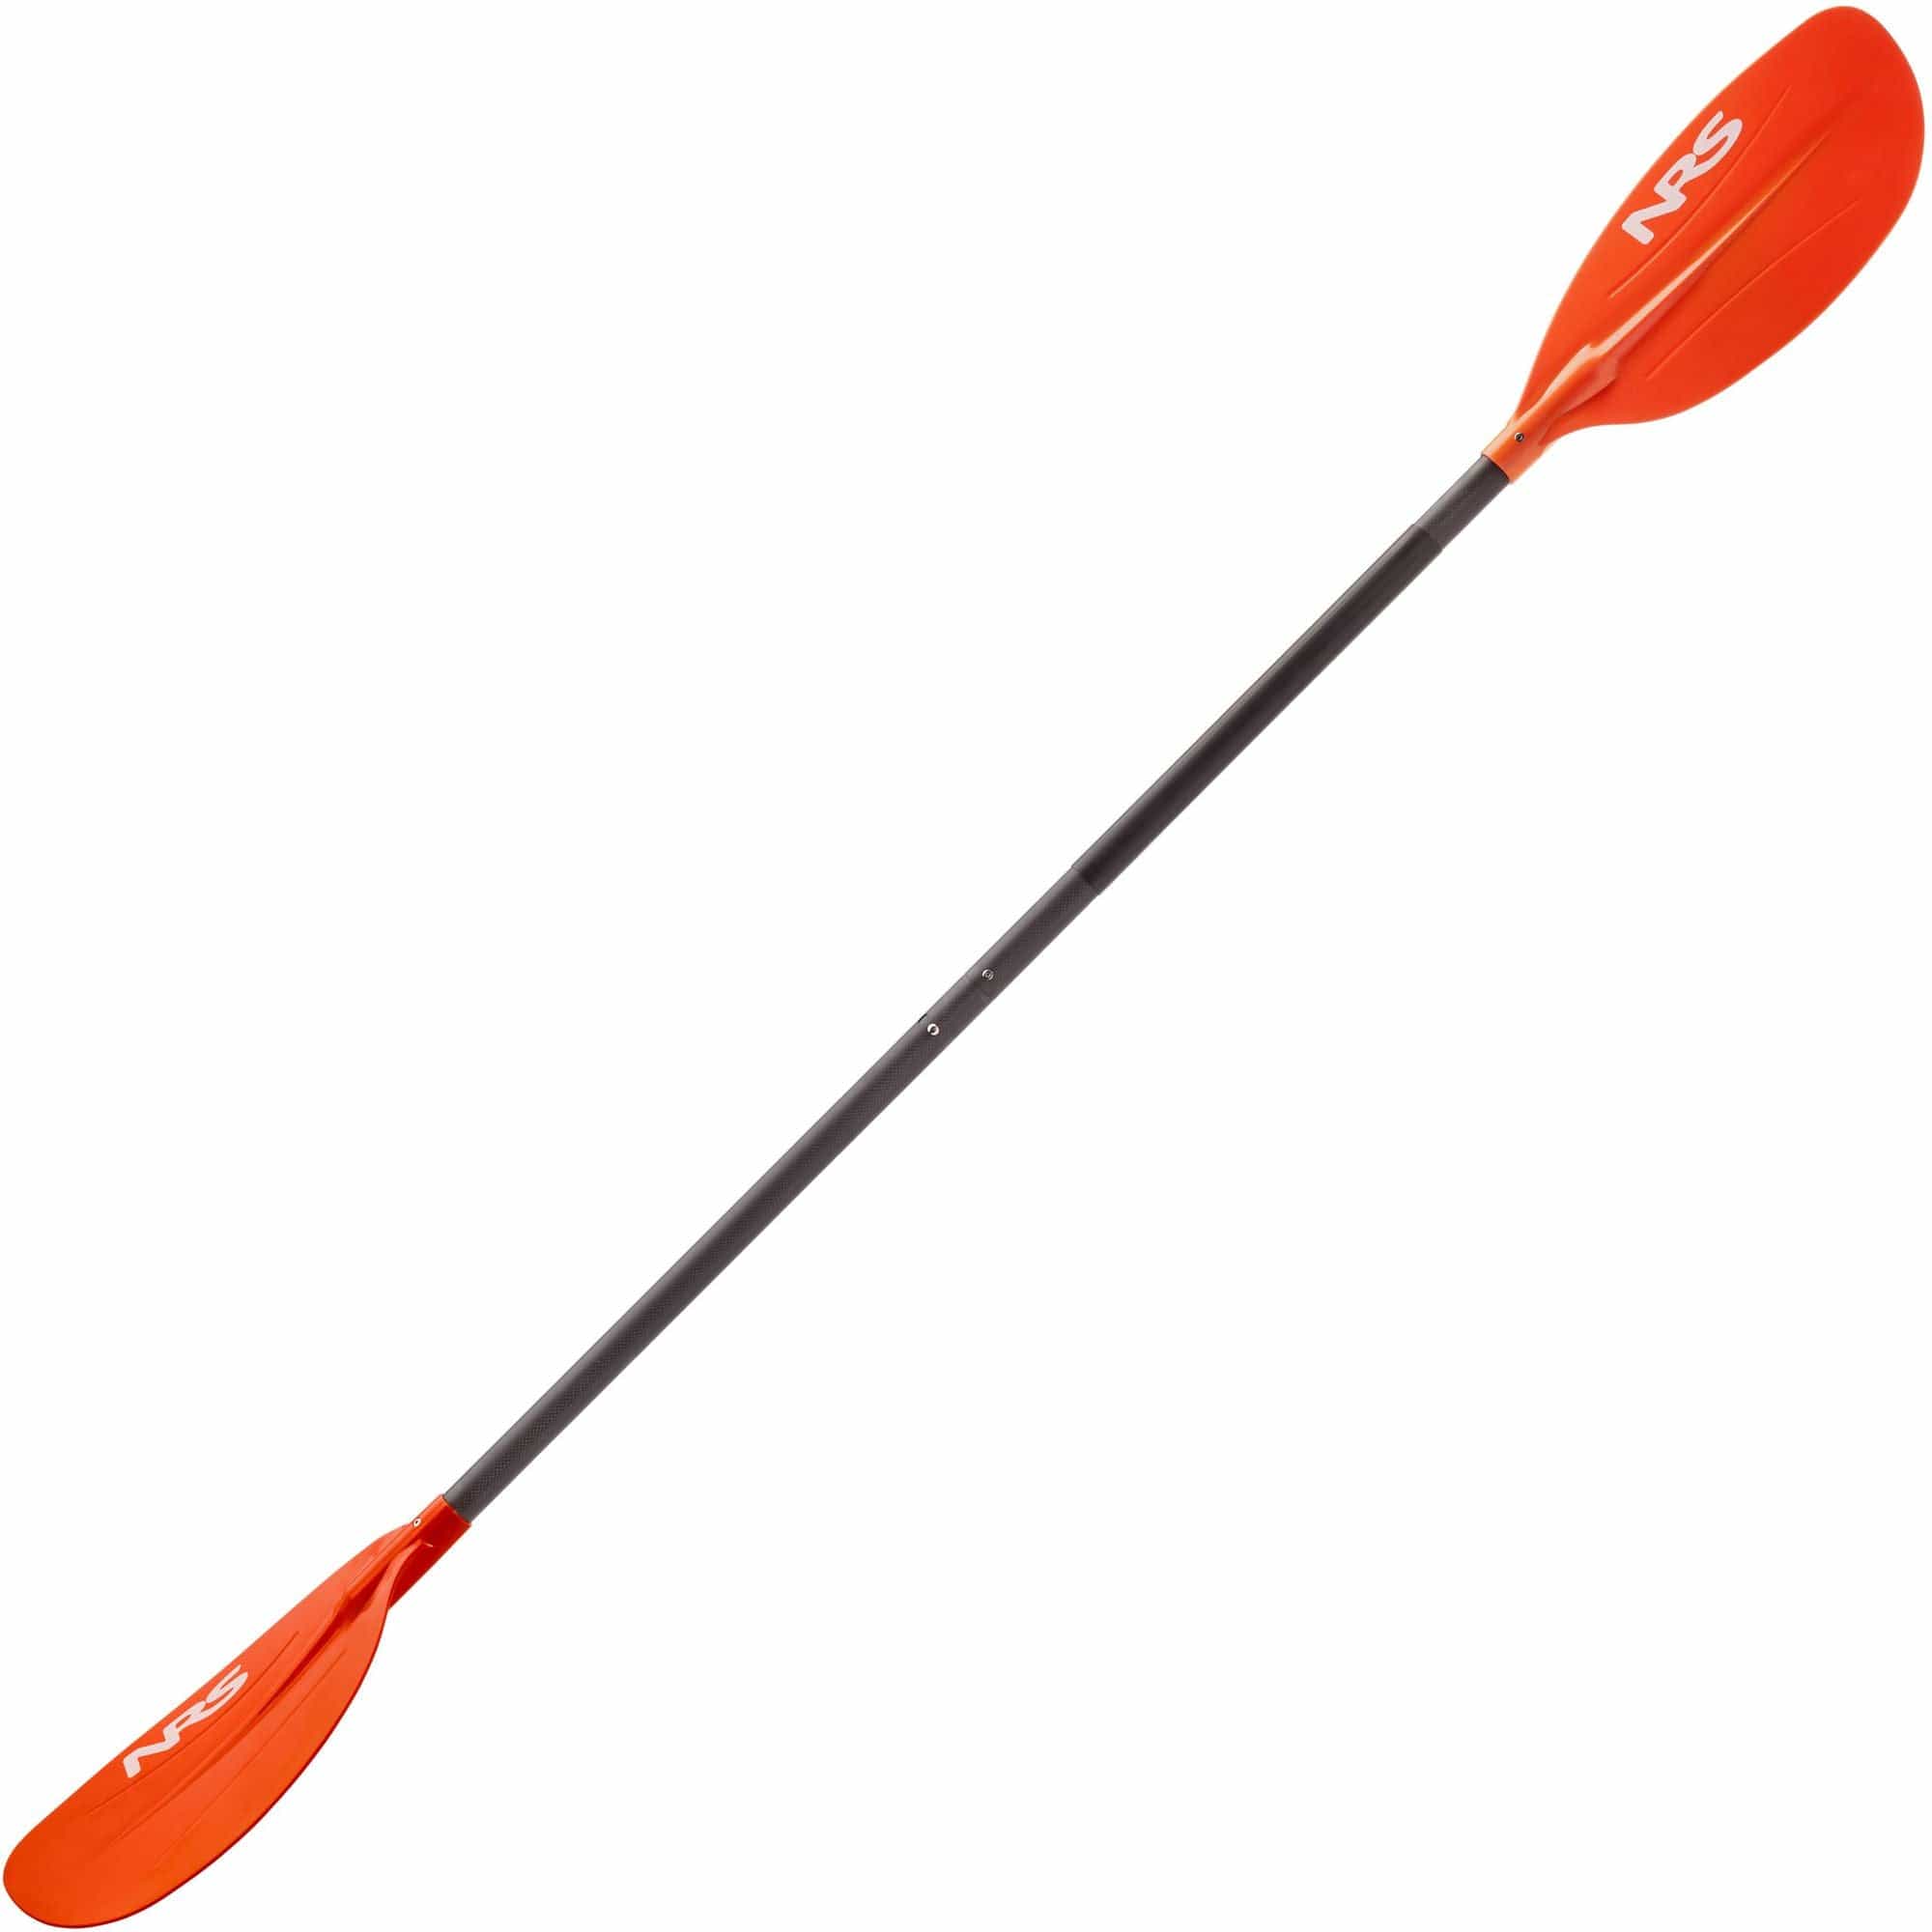 2x Pink Kayak Paddle Leash Fishing Rod Holder Bungee Tie Rope Shock Cord  Lanyard